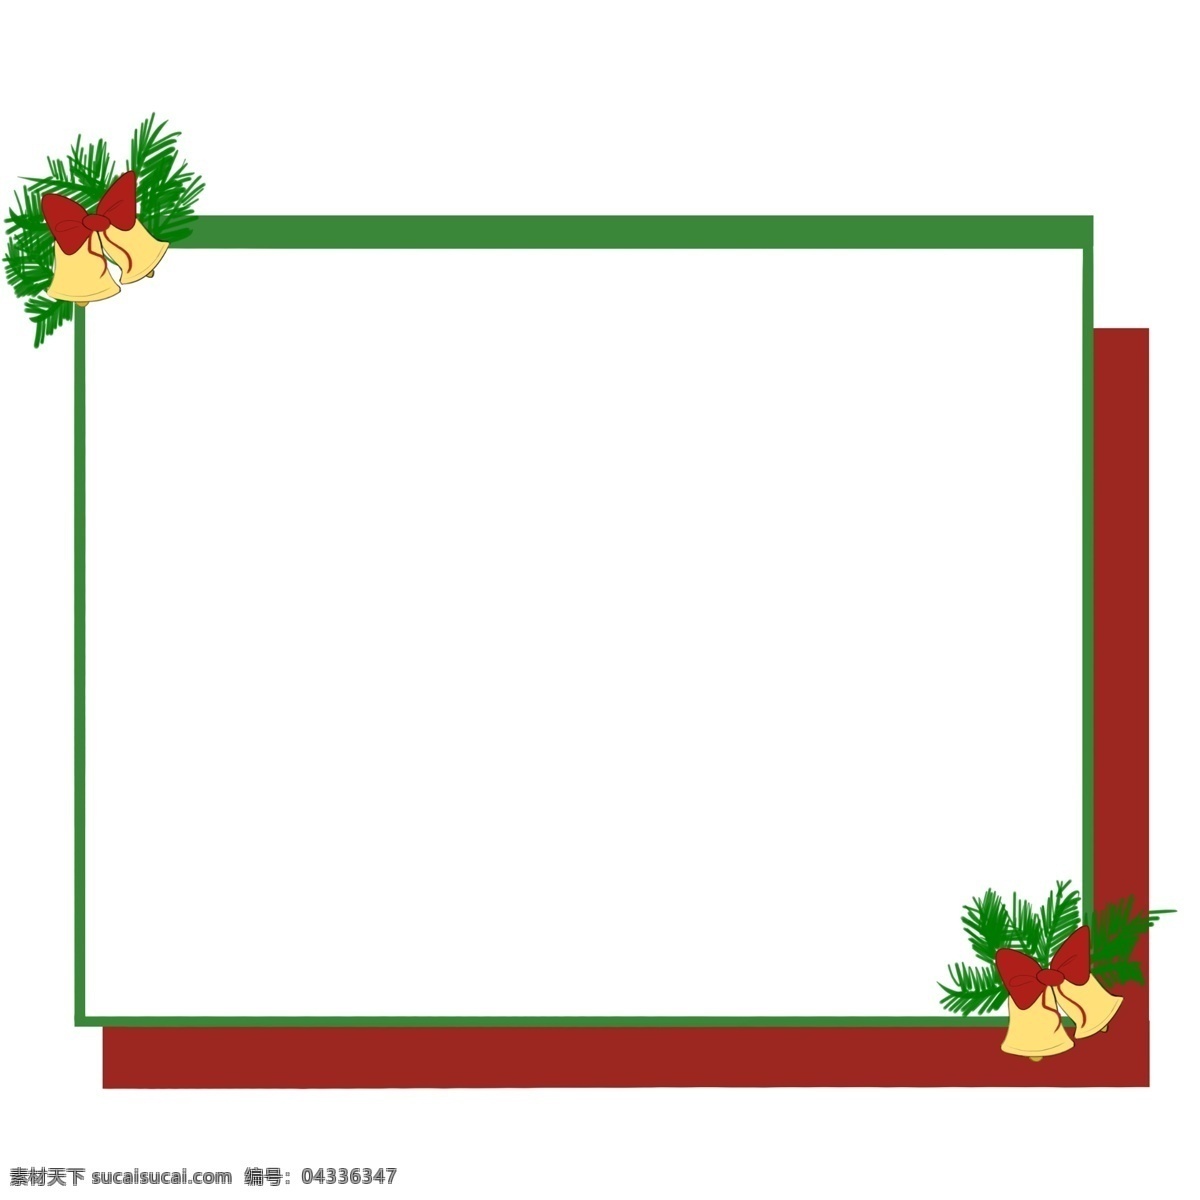 圣诞节 金色 铃铛 边框 圣诞节边框 手绘边框 唯美边框 边框插画 绿色的边框 红色的地图 金色的铃铛 红色的蝴蝶结